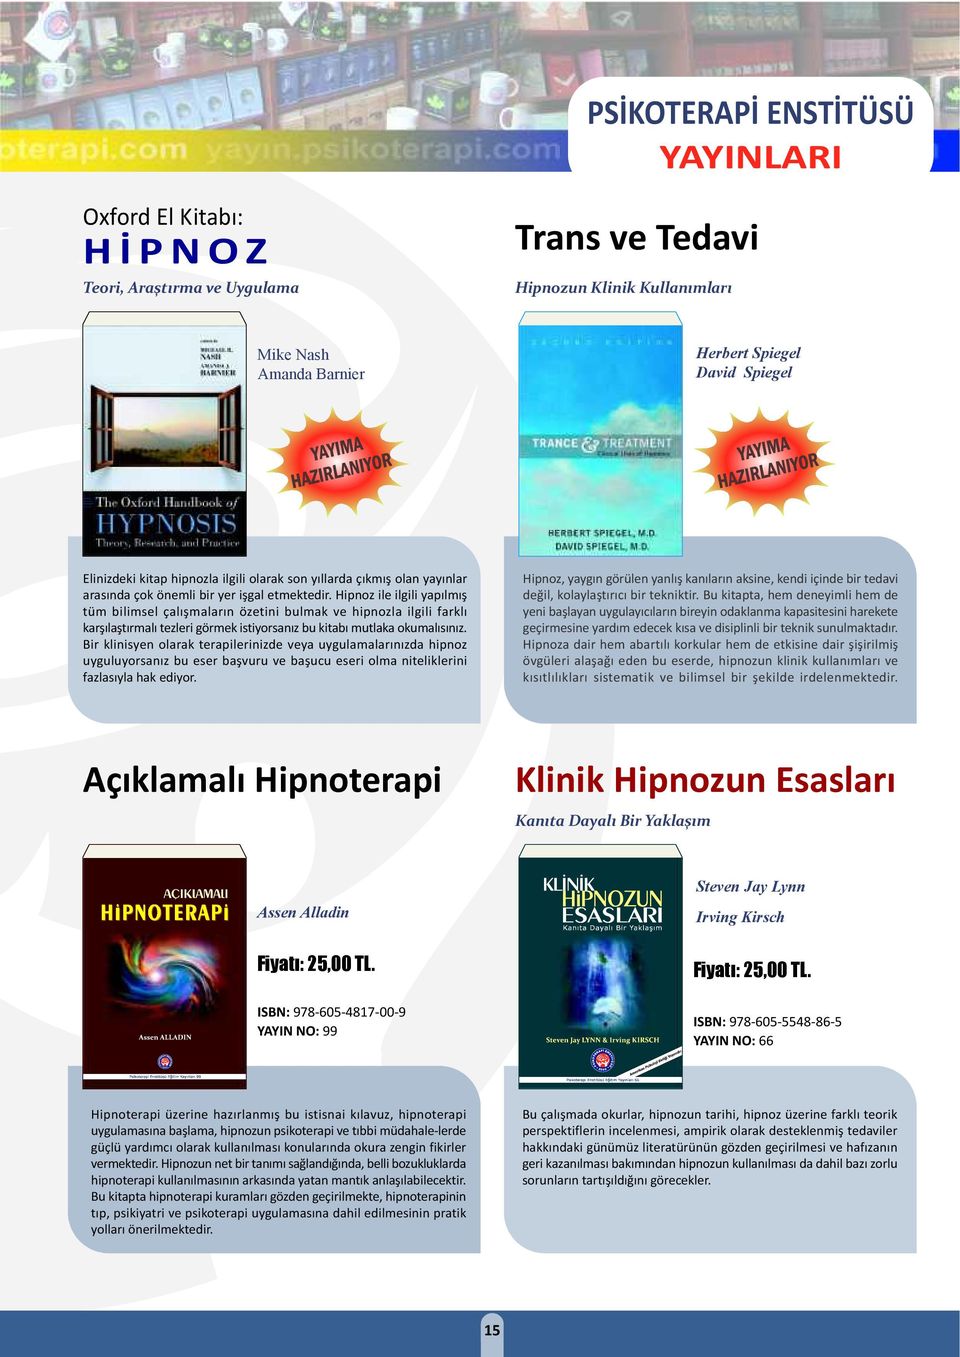 Hipnoz ile ilgili yapılmış tüm bilimsel çalışmaların özetini bulmak ve hipnozla ilgili farklı karşılaştırmalı tezleri görmek istiyorsanız bu kitabı mutlaka okumalısınız.